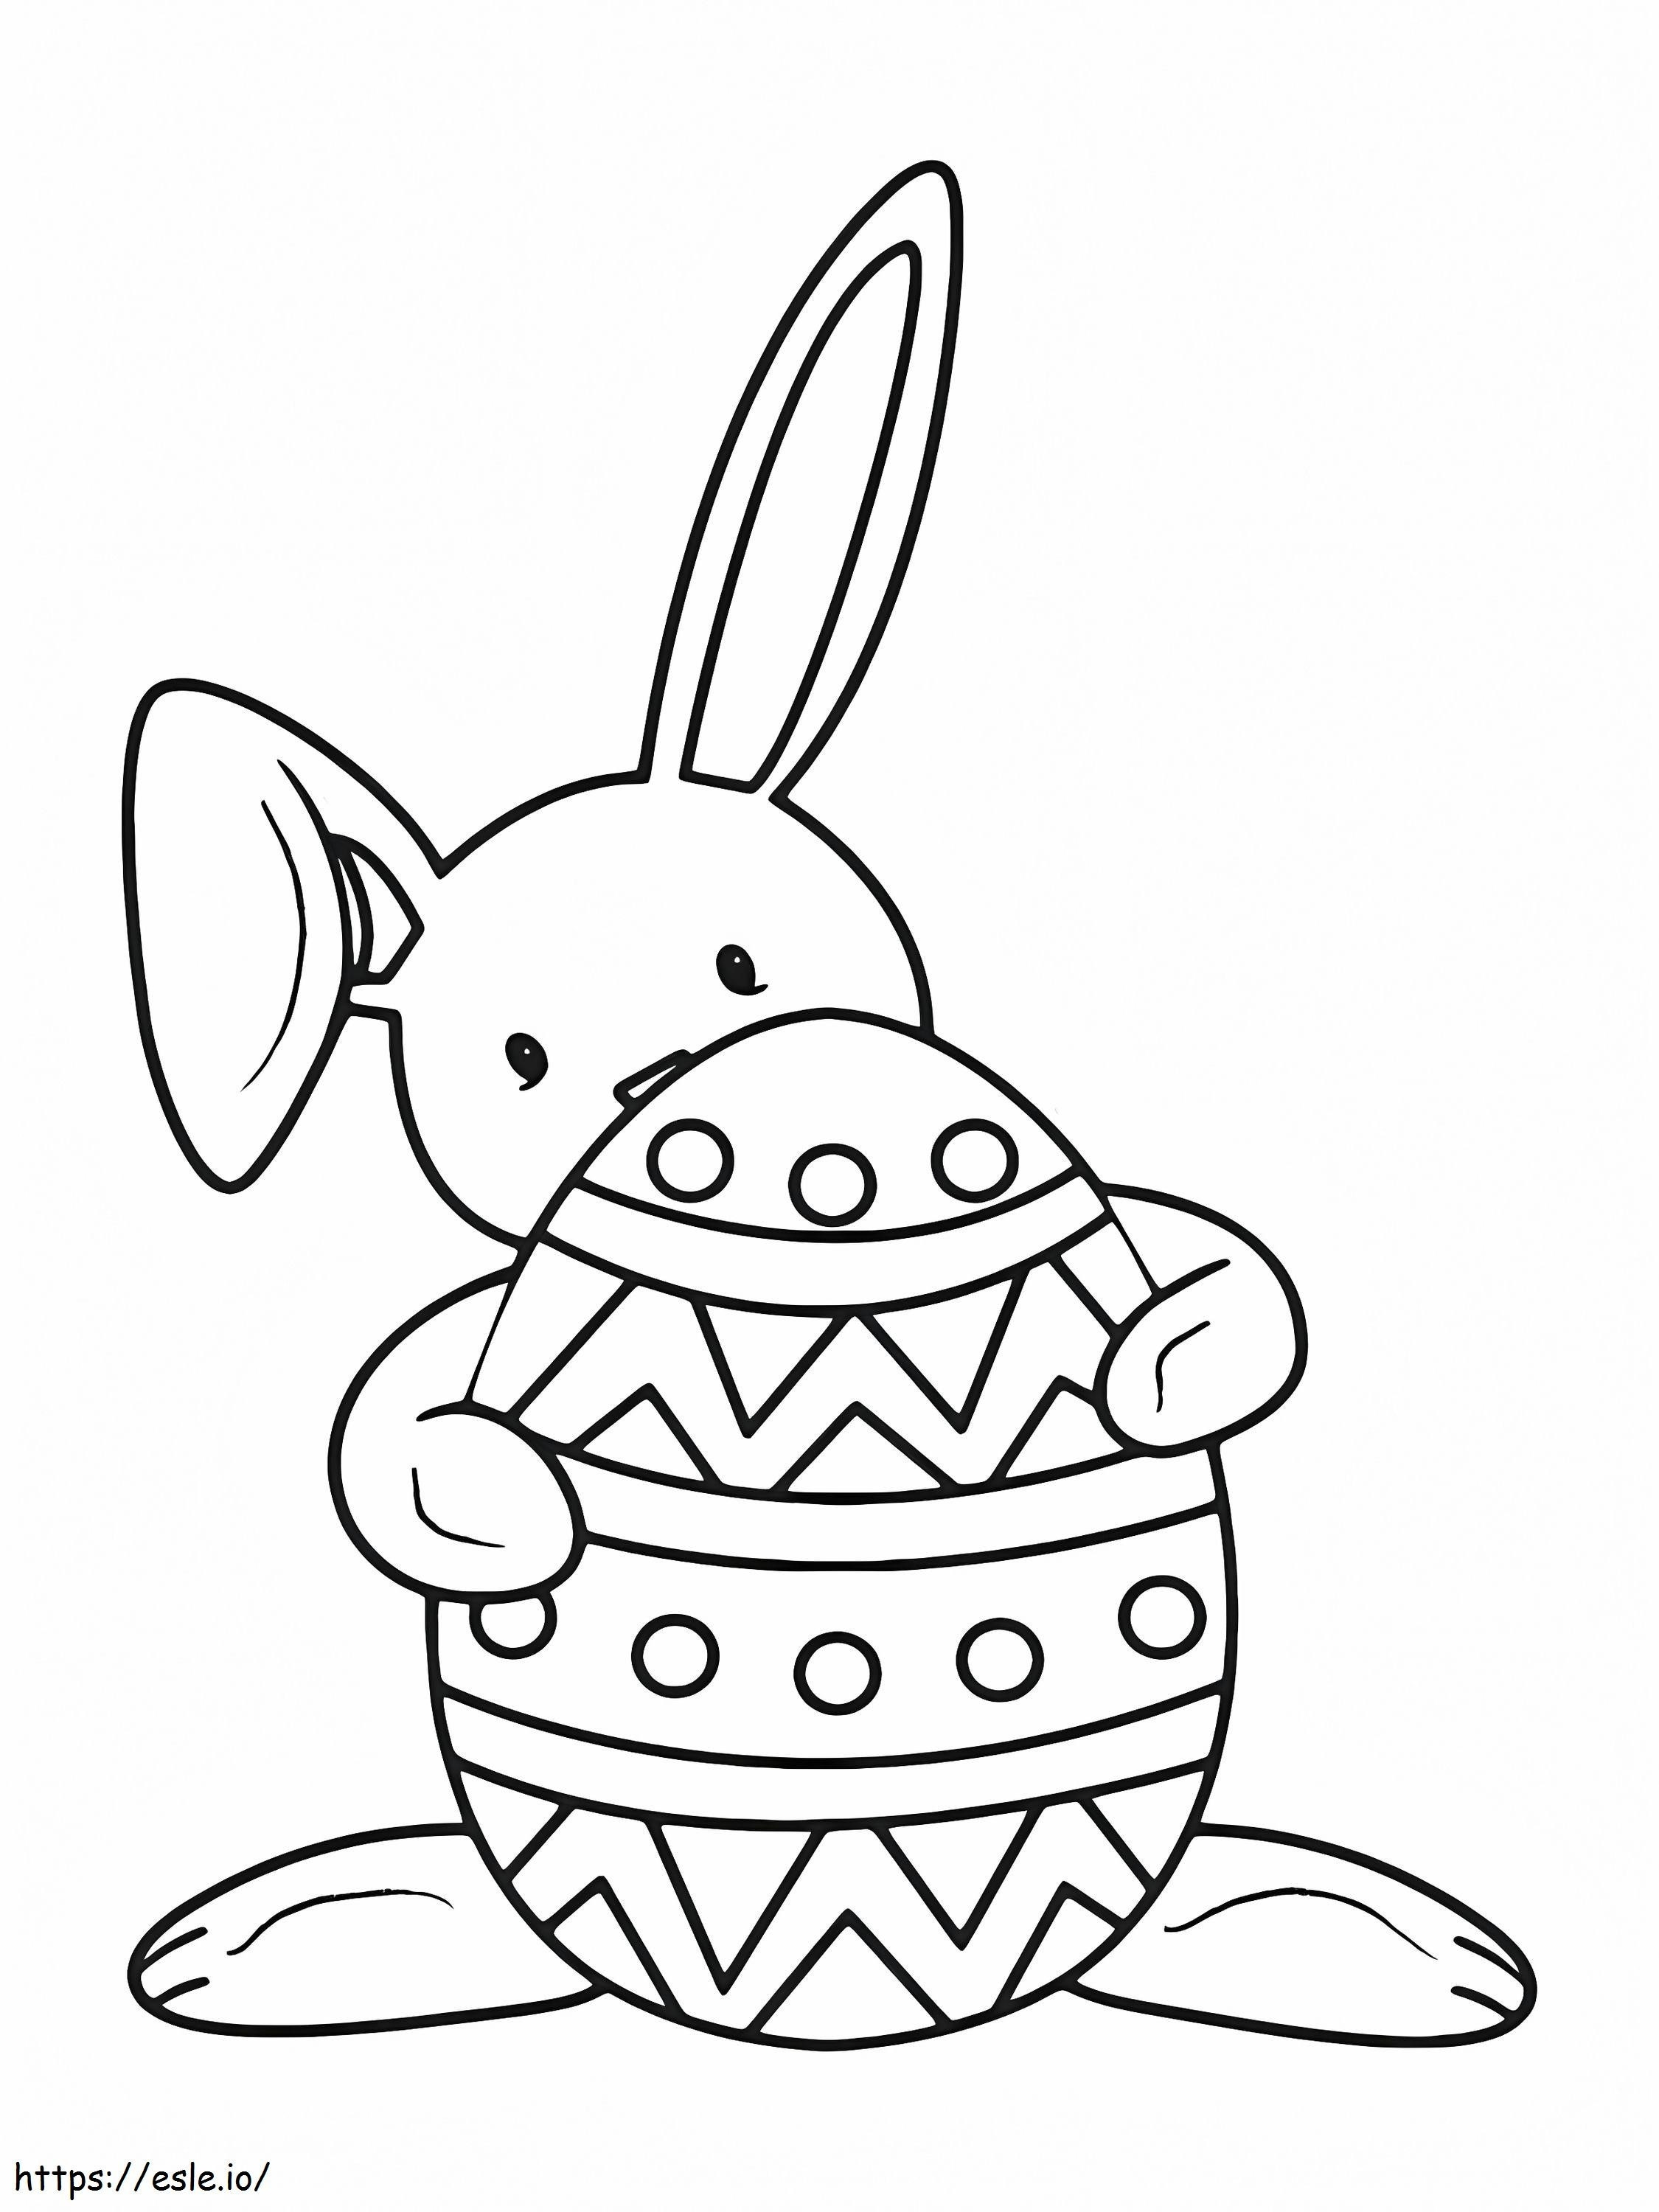 Conejito de Pascua detrás del huevo para colorear